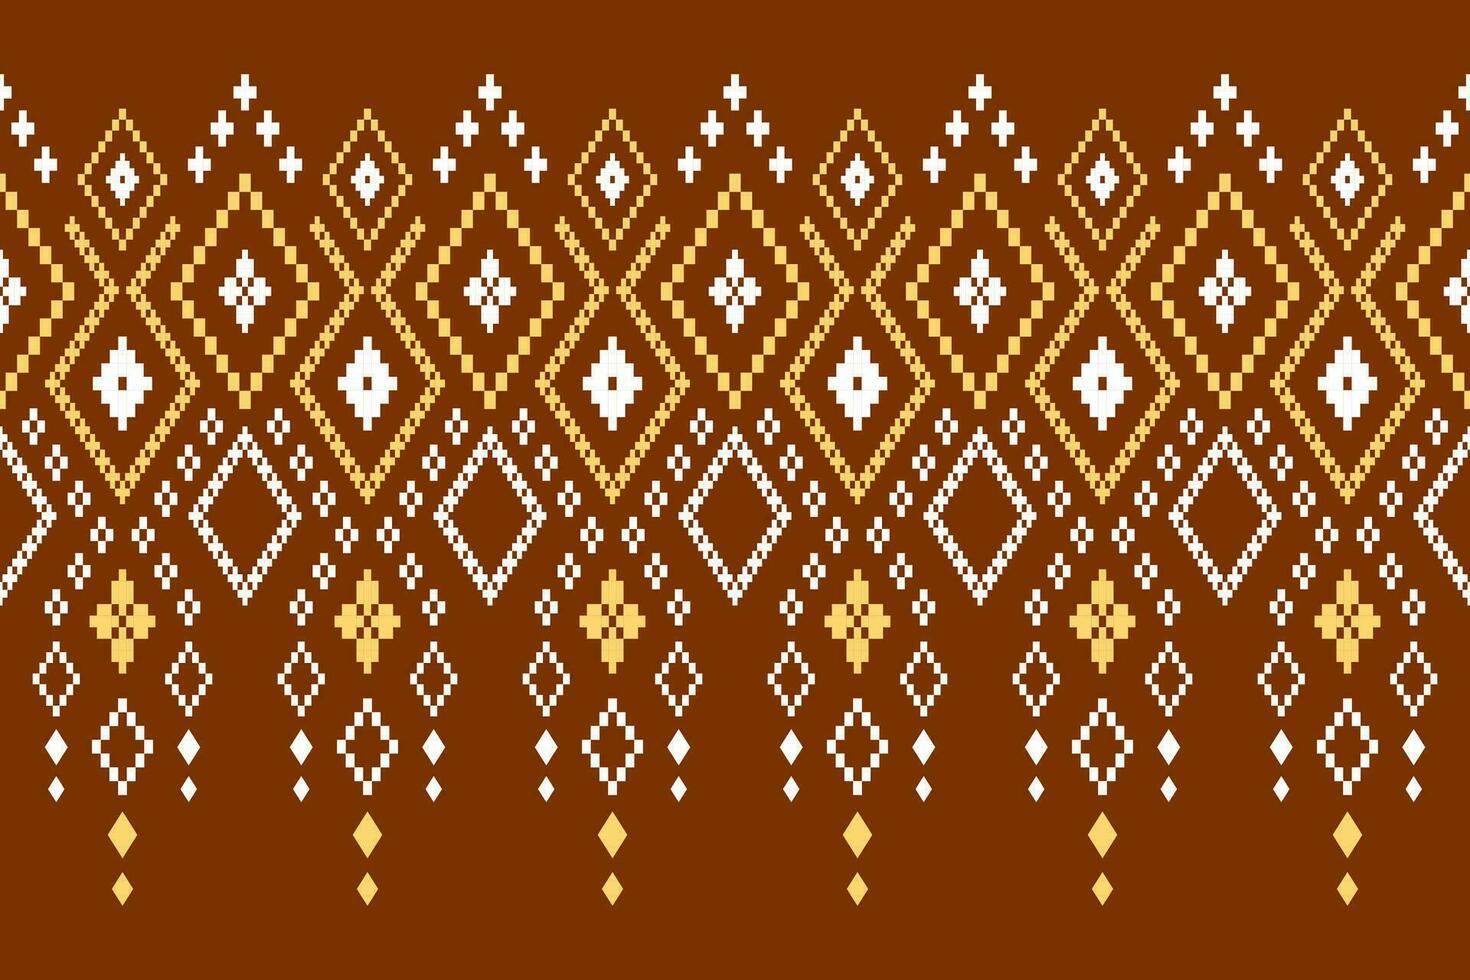 oranje jaargangen kruis steek traditioneel etnisch patroon paisley bloem ikat achtergrond abstract aztec Afrikaanse Indonesisch Indisch naadloos patroon voor kleding stof afdrukken kleding jurk tapijt gordijnen en sarong vector